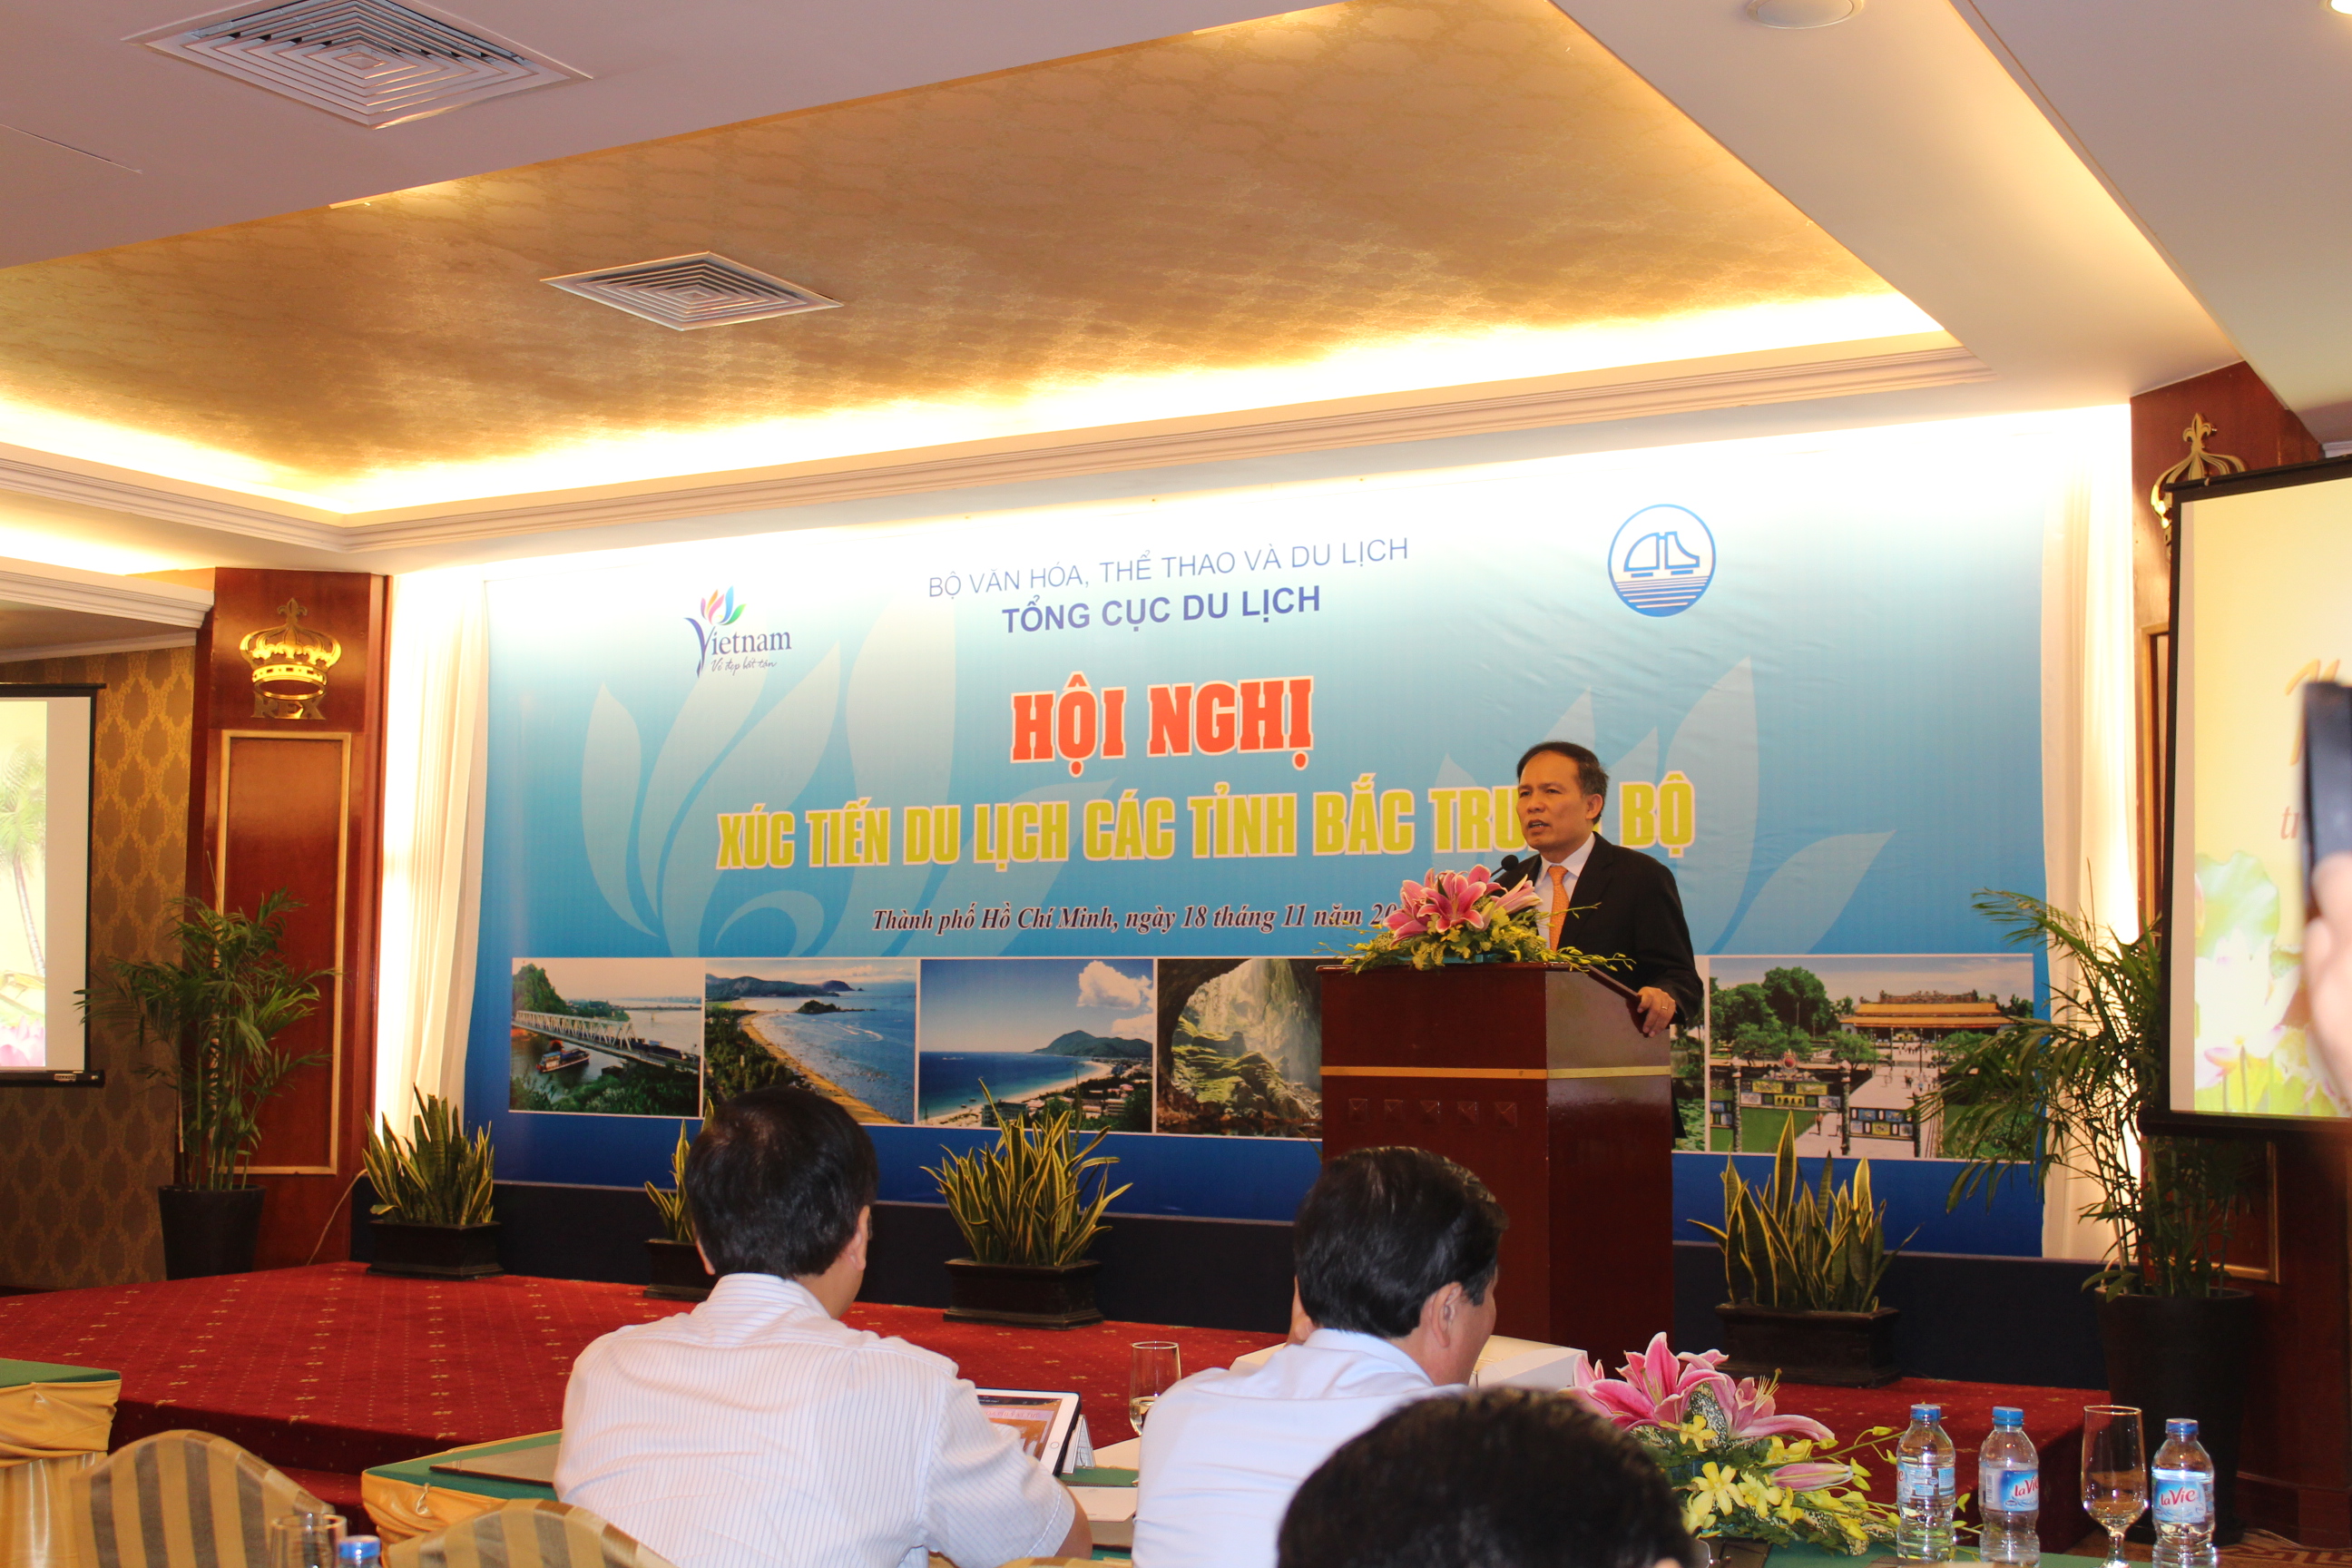 Hội nghị xúc tiến du lịch các tỉnh Bắc Trung Bộ tại TP Hồ Chí Minh